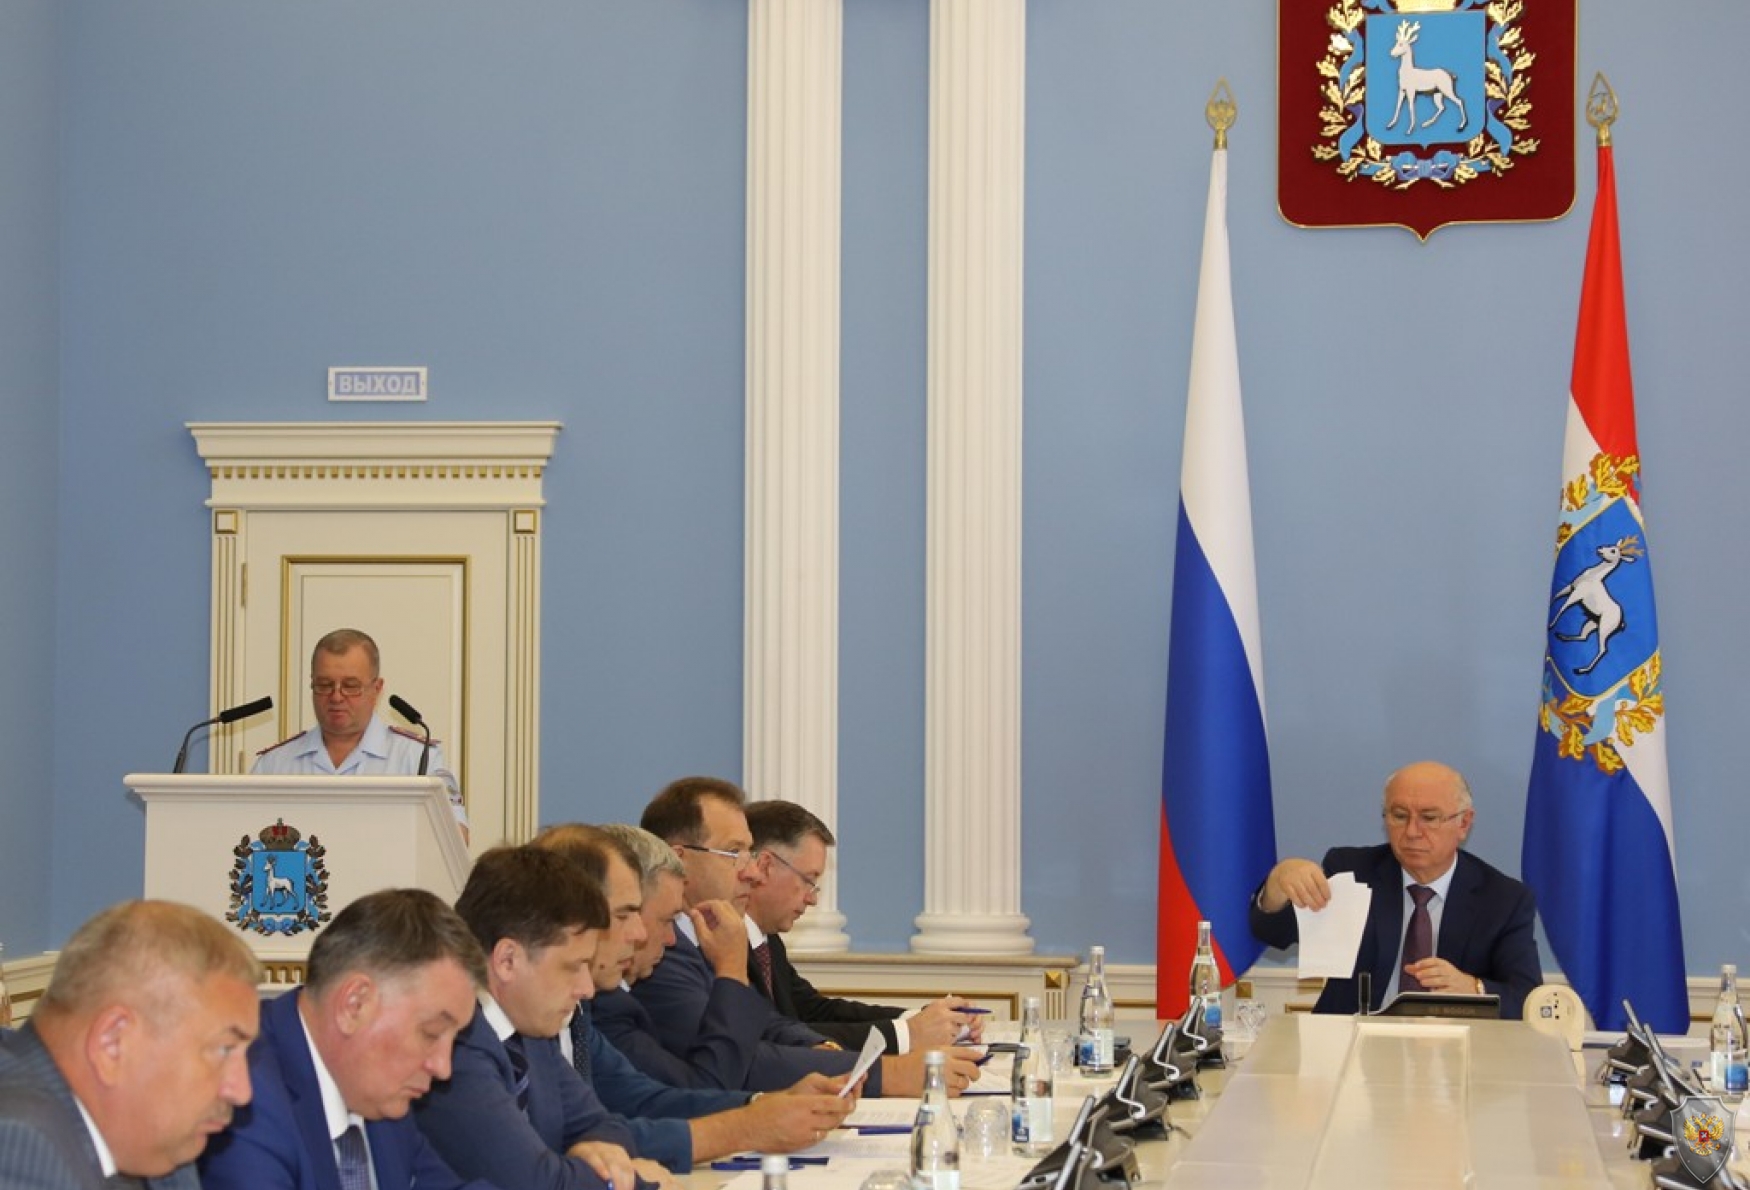 В Самарской области прошло заседание антитеррористической комиссии